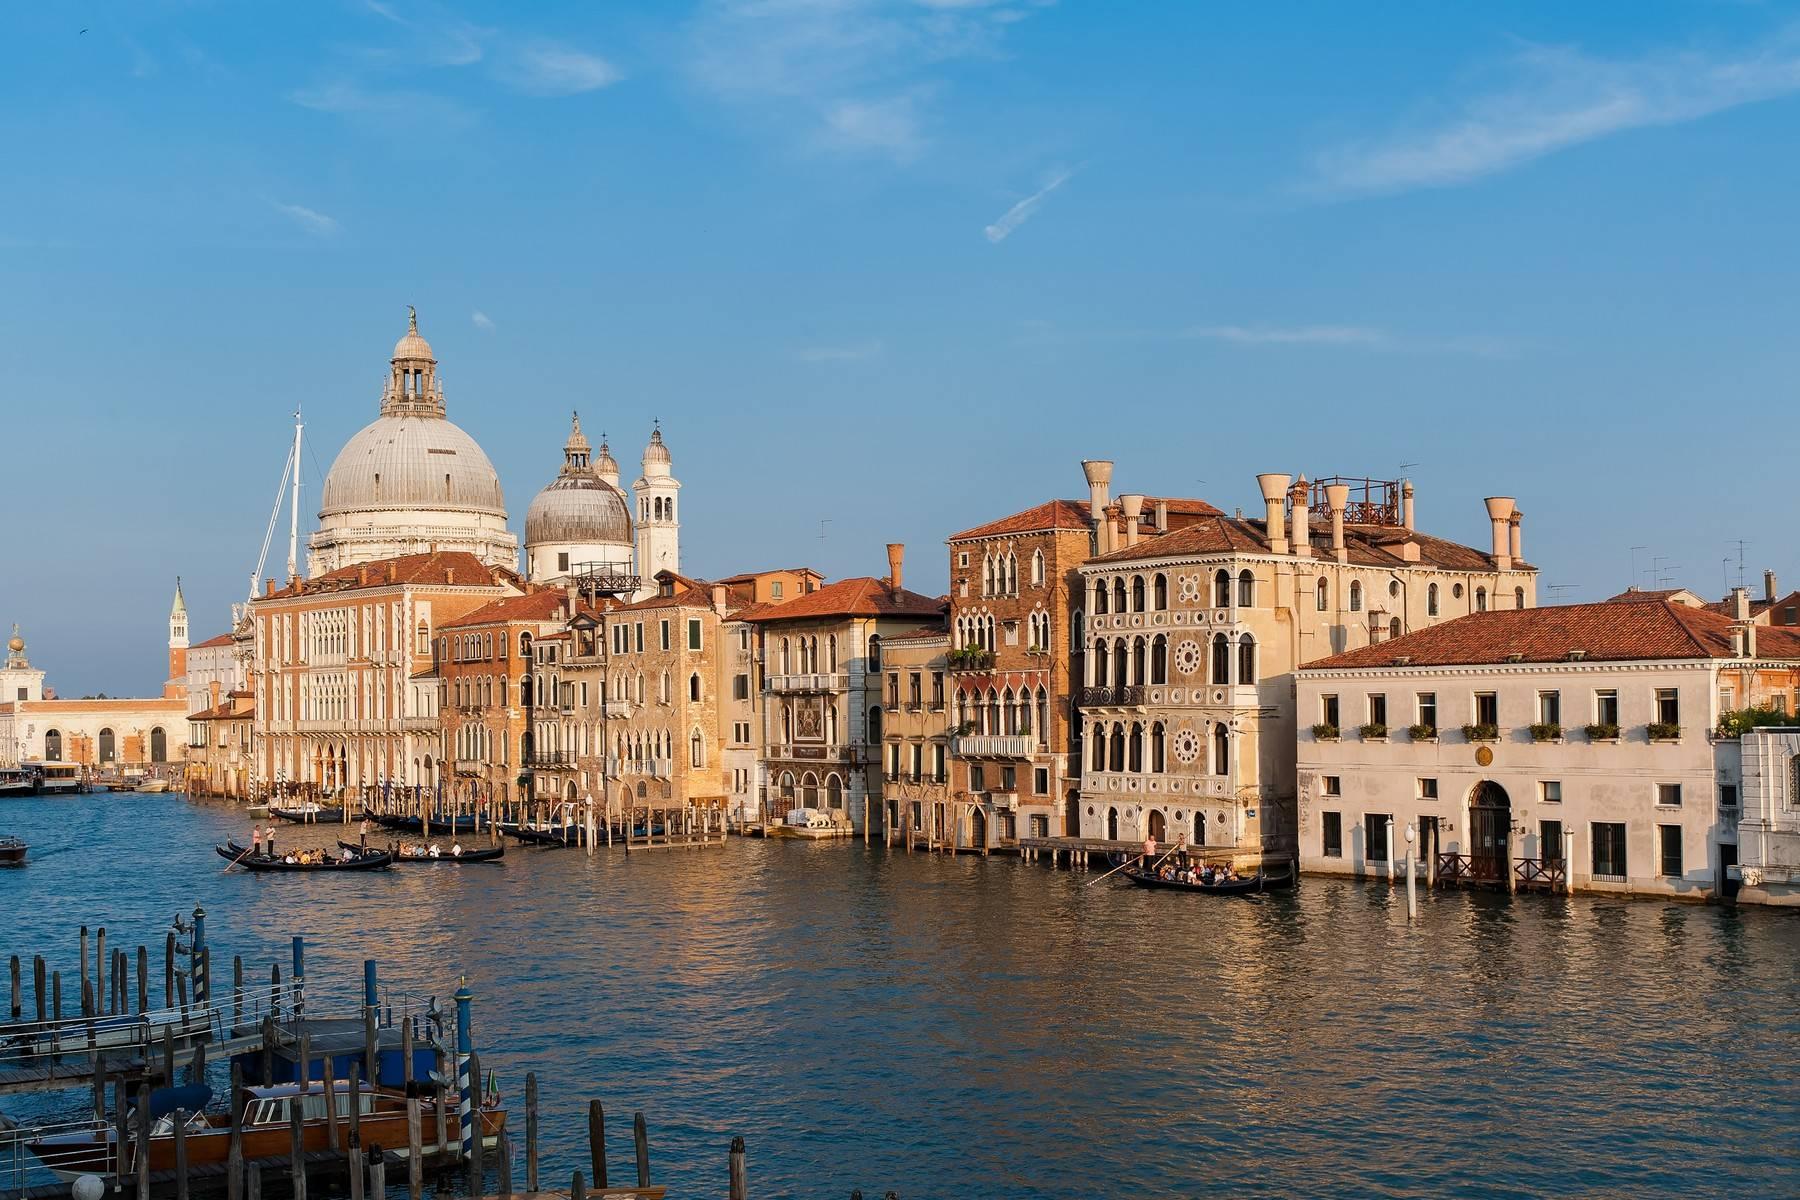 Vues incroyables sur le Grand Canal de Venise  - 23